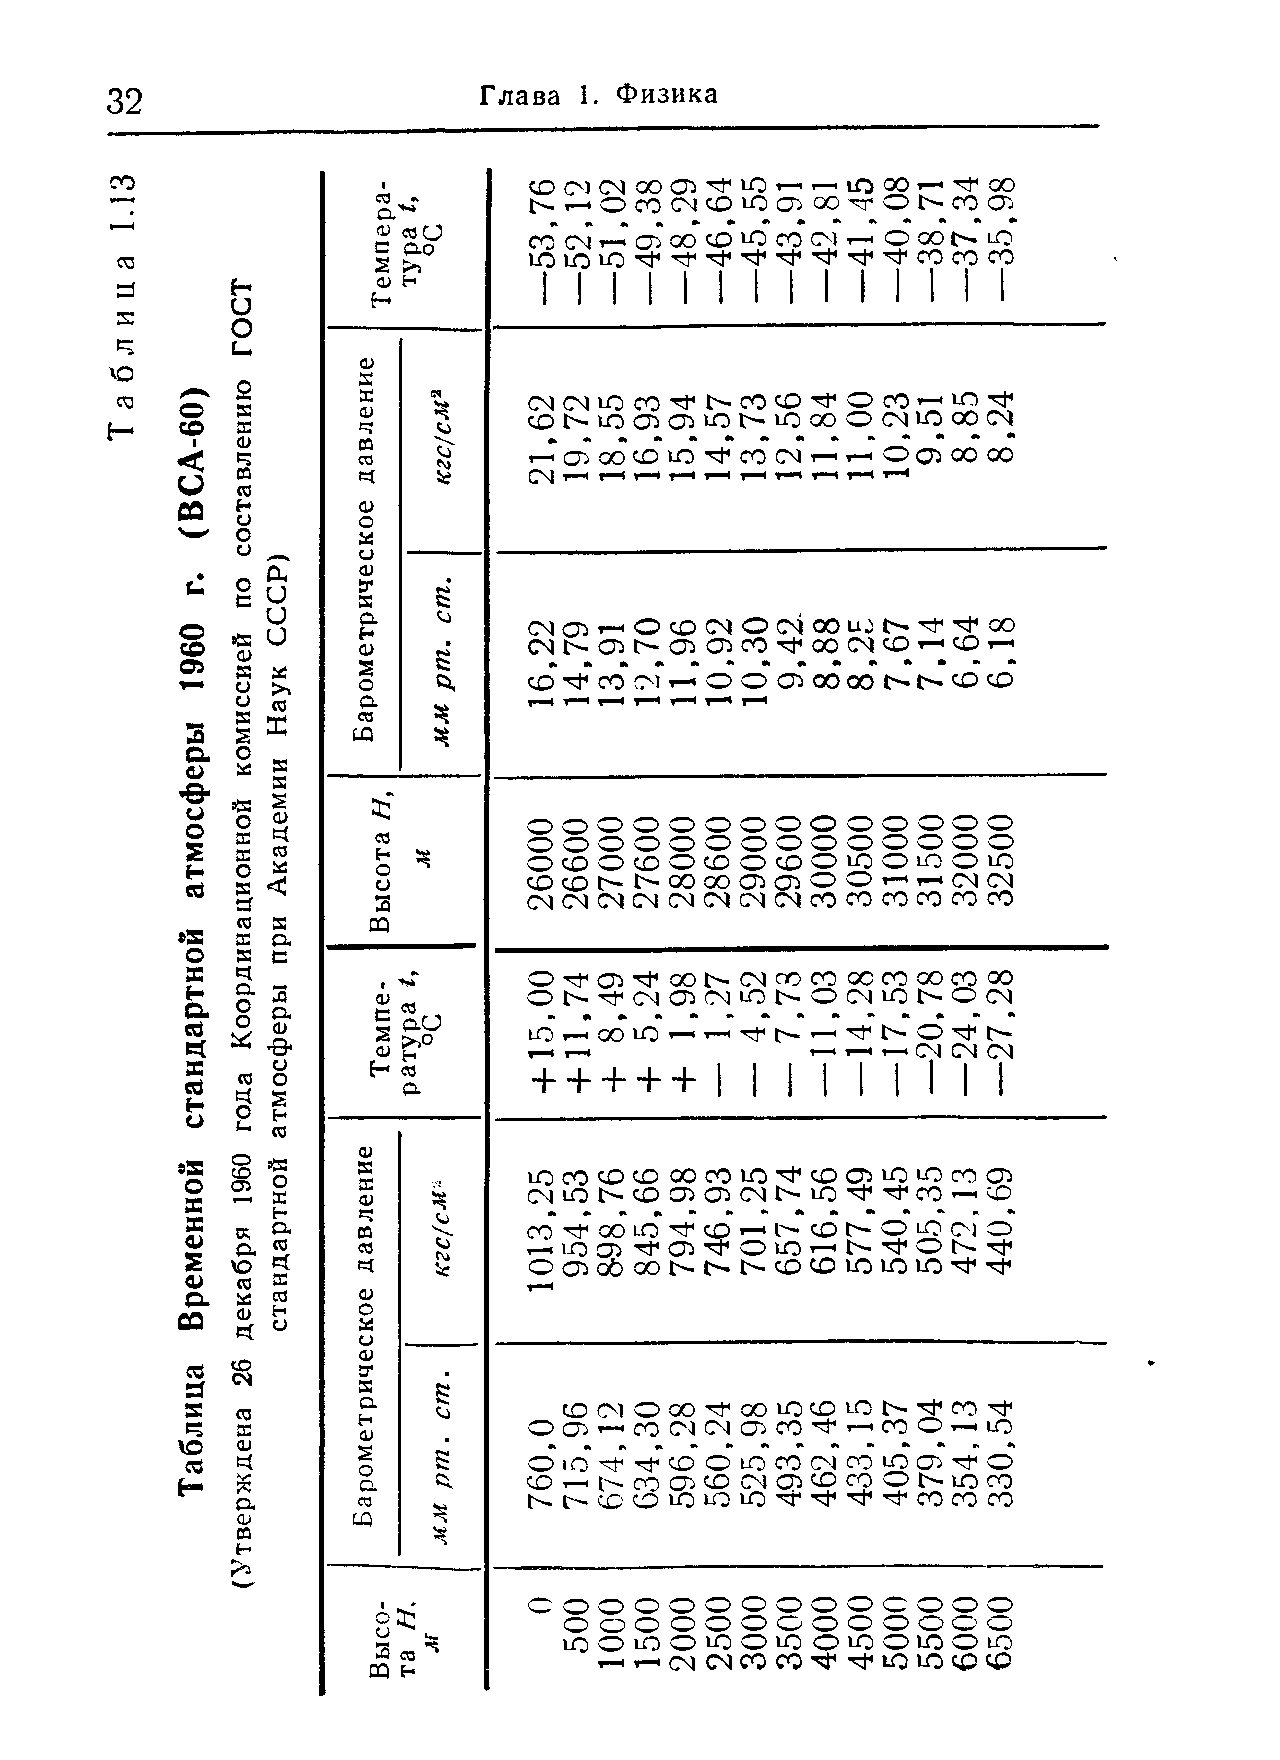 Таблица Временной стандартной атмосферы 1960 г. (ВСА-60)
